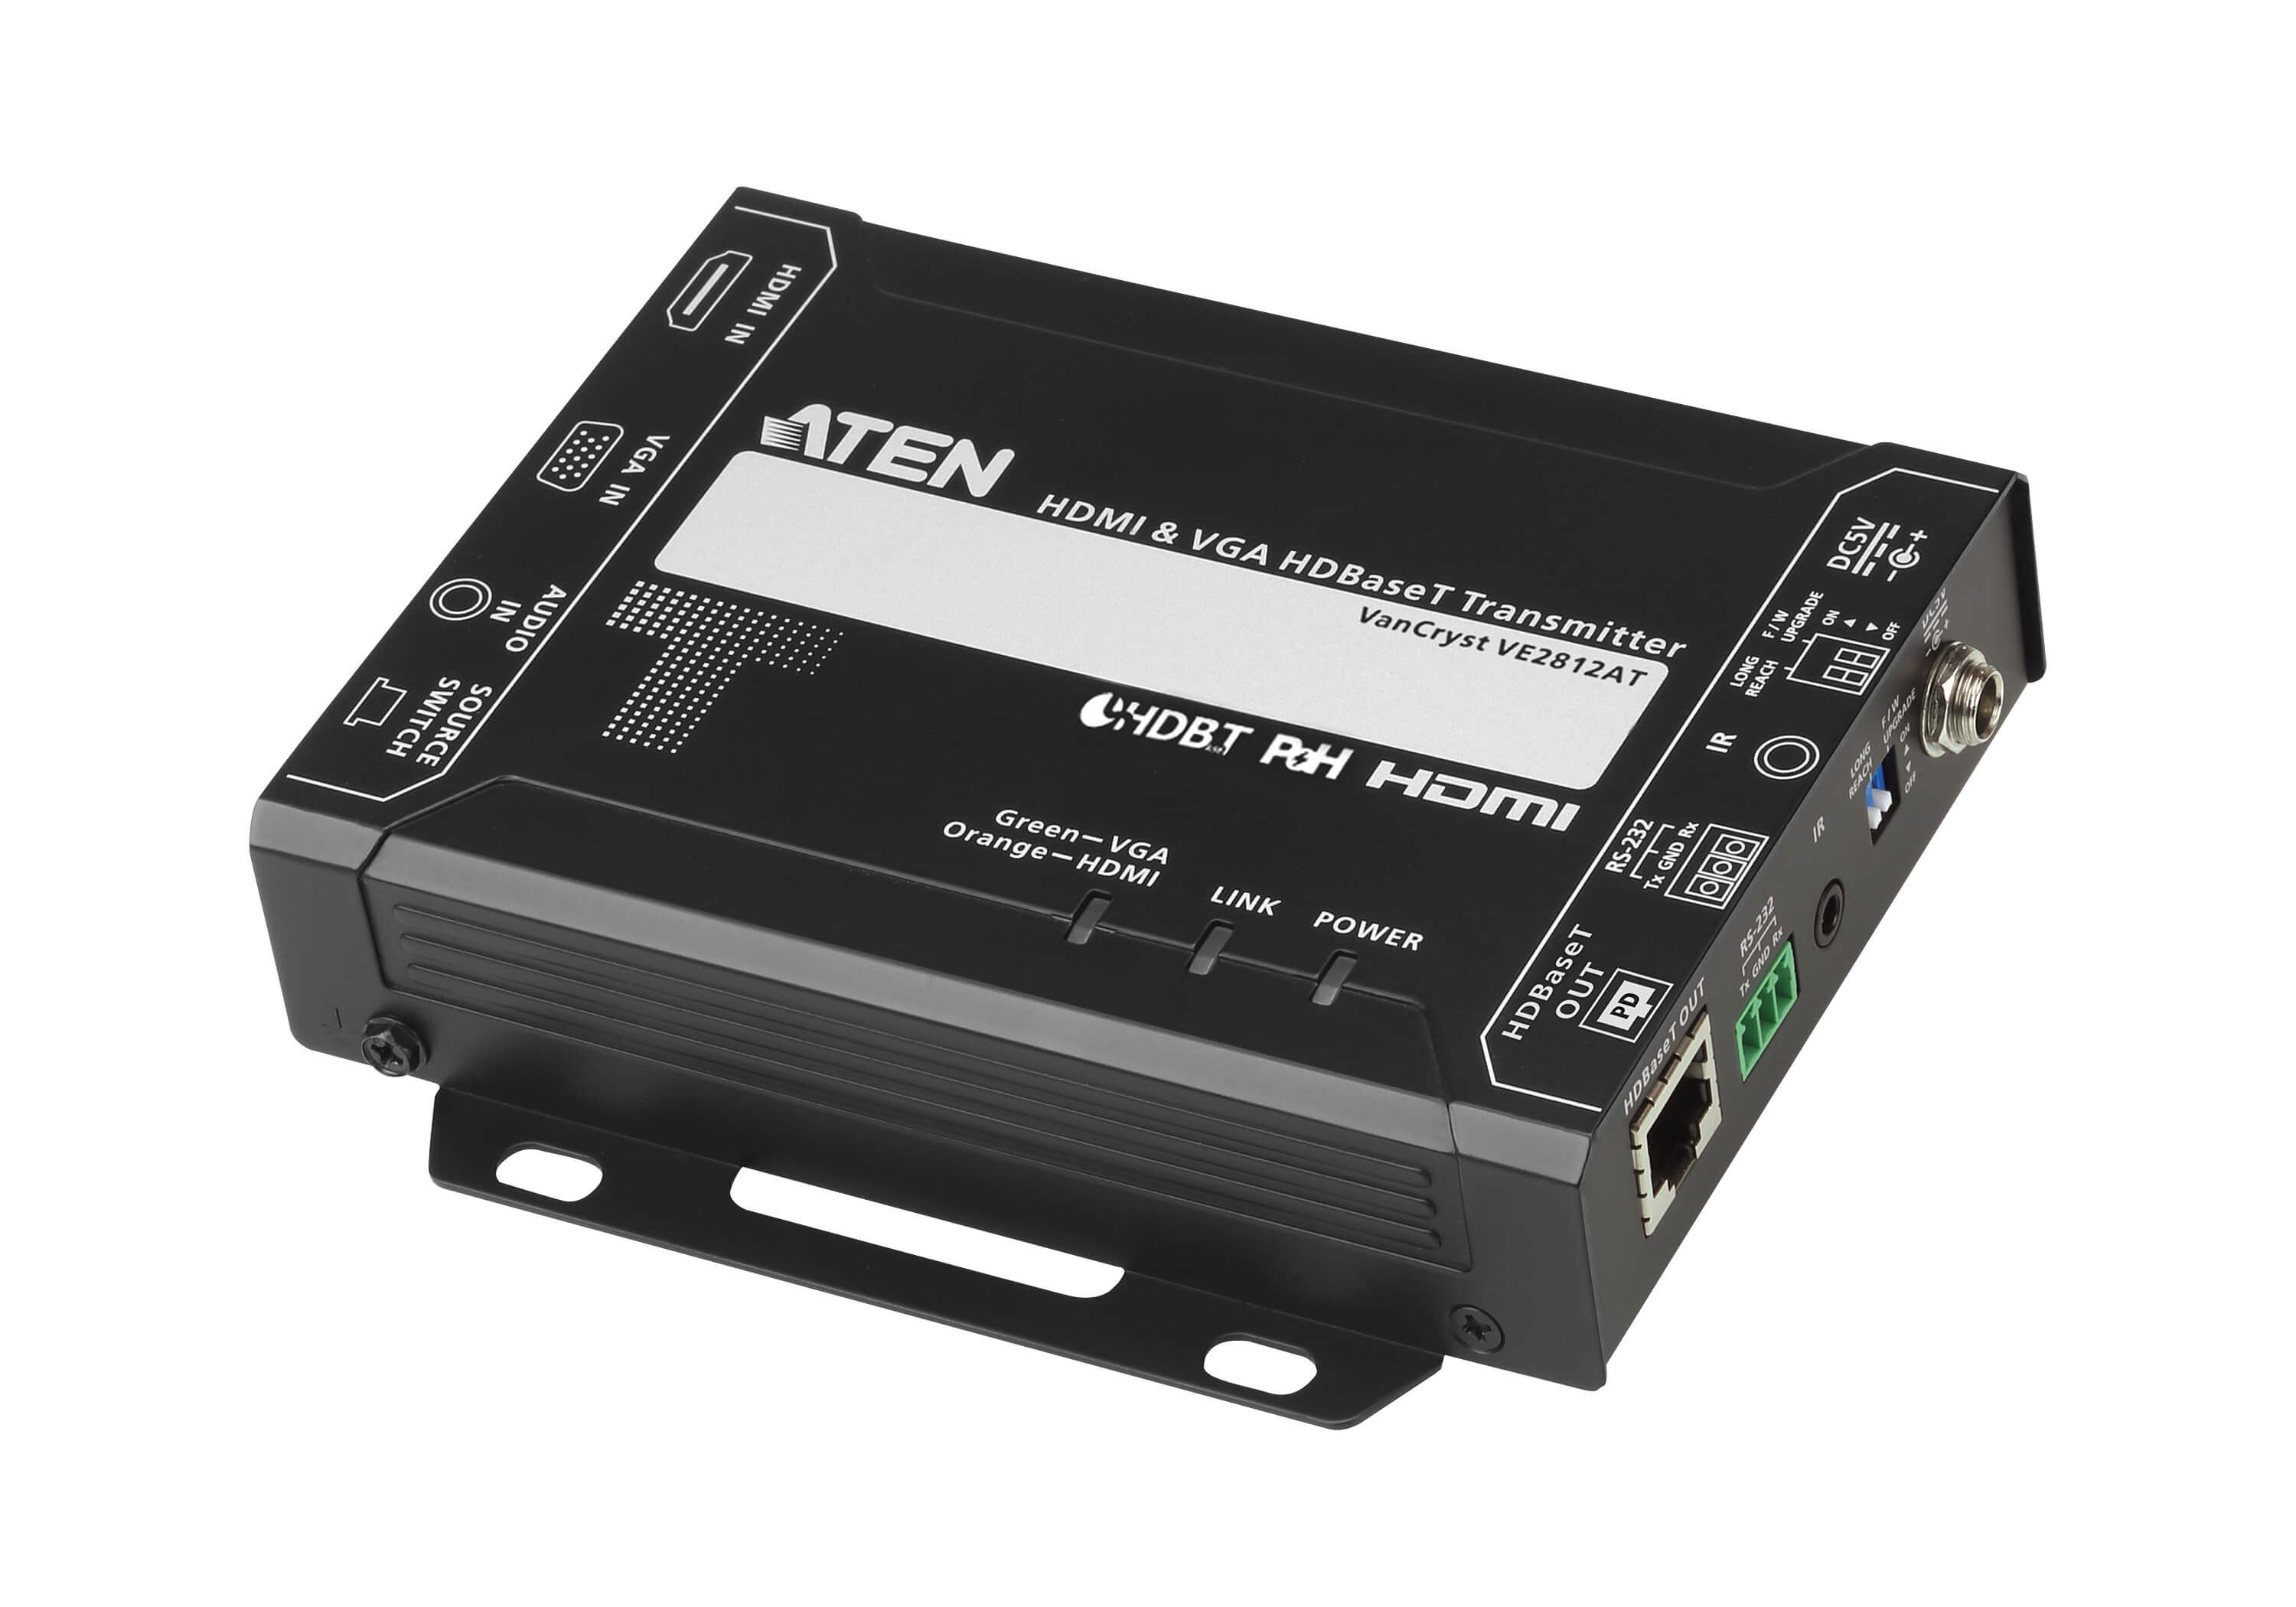 取寄 ATEN VE2812AT  HDMI & VGA HDBaseT Transmitter with POH